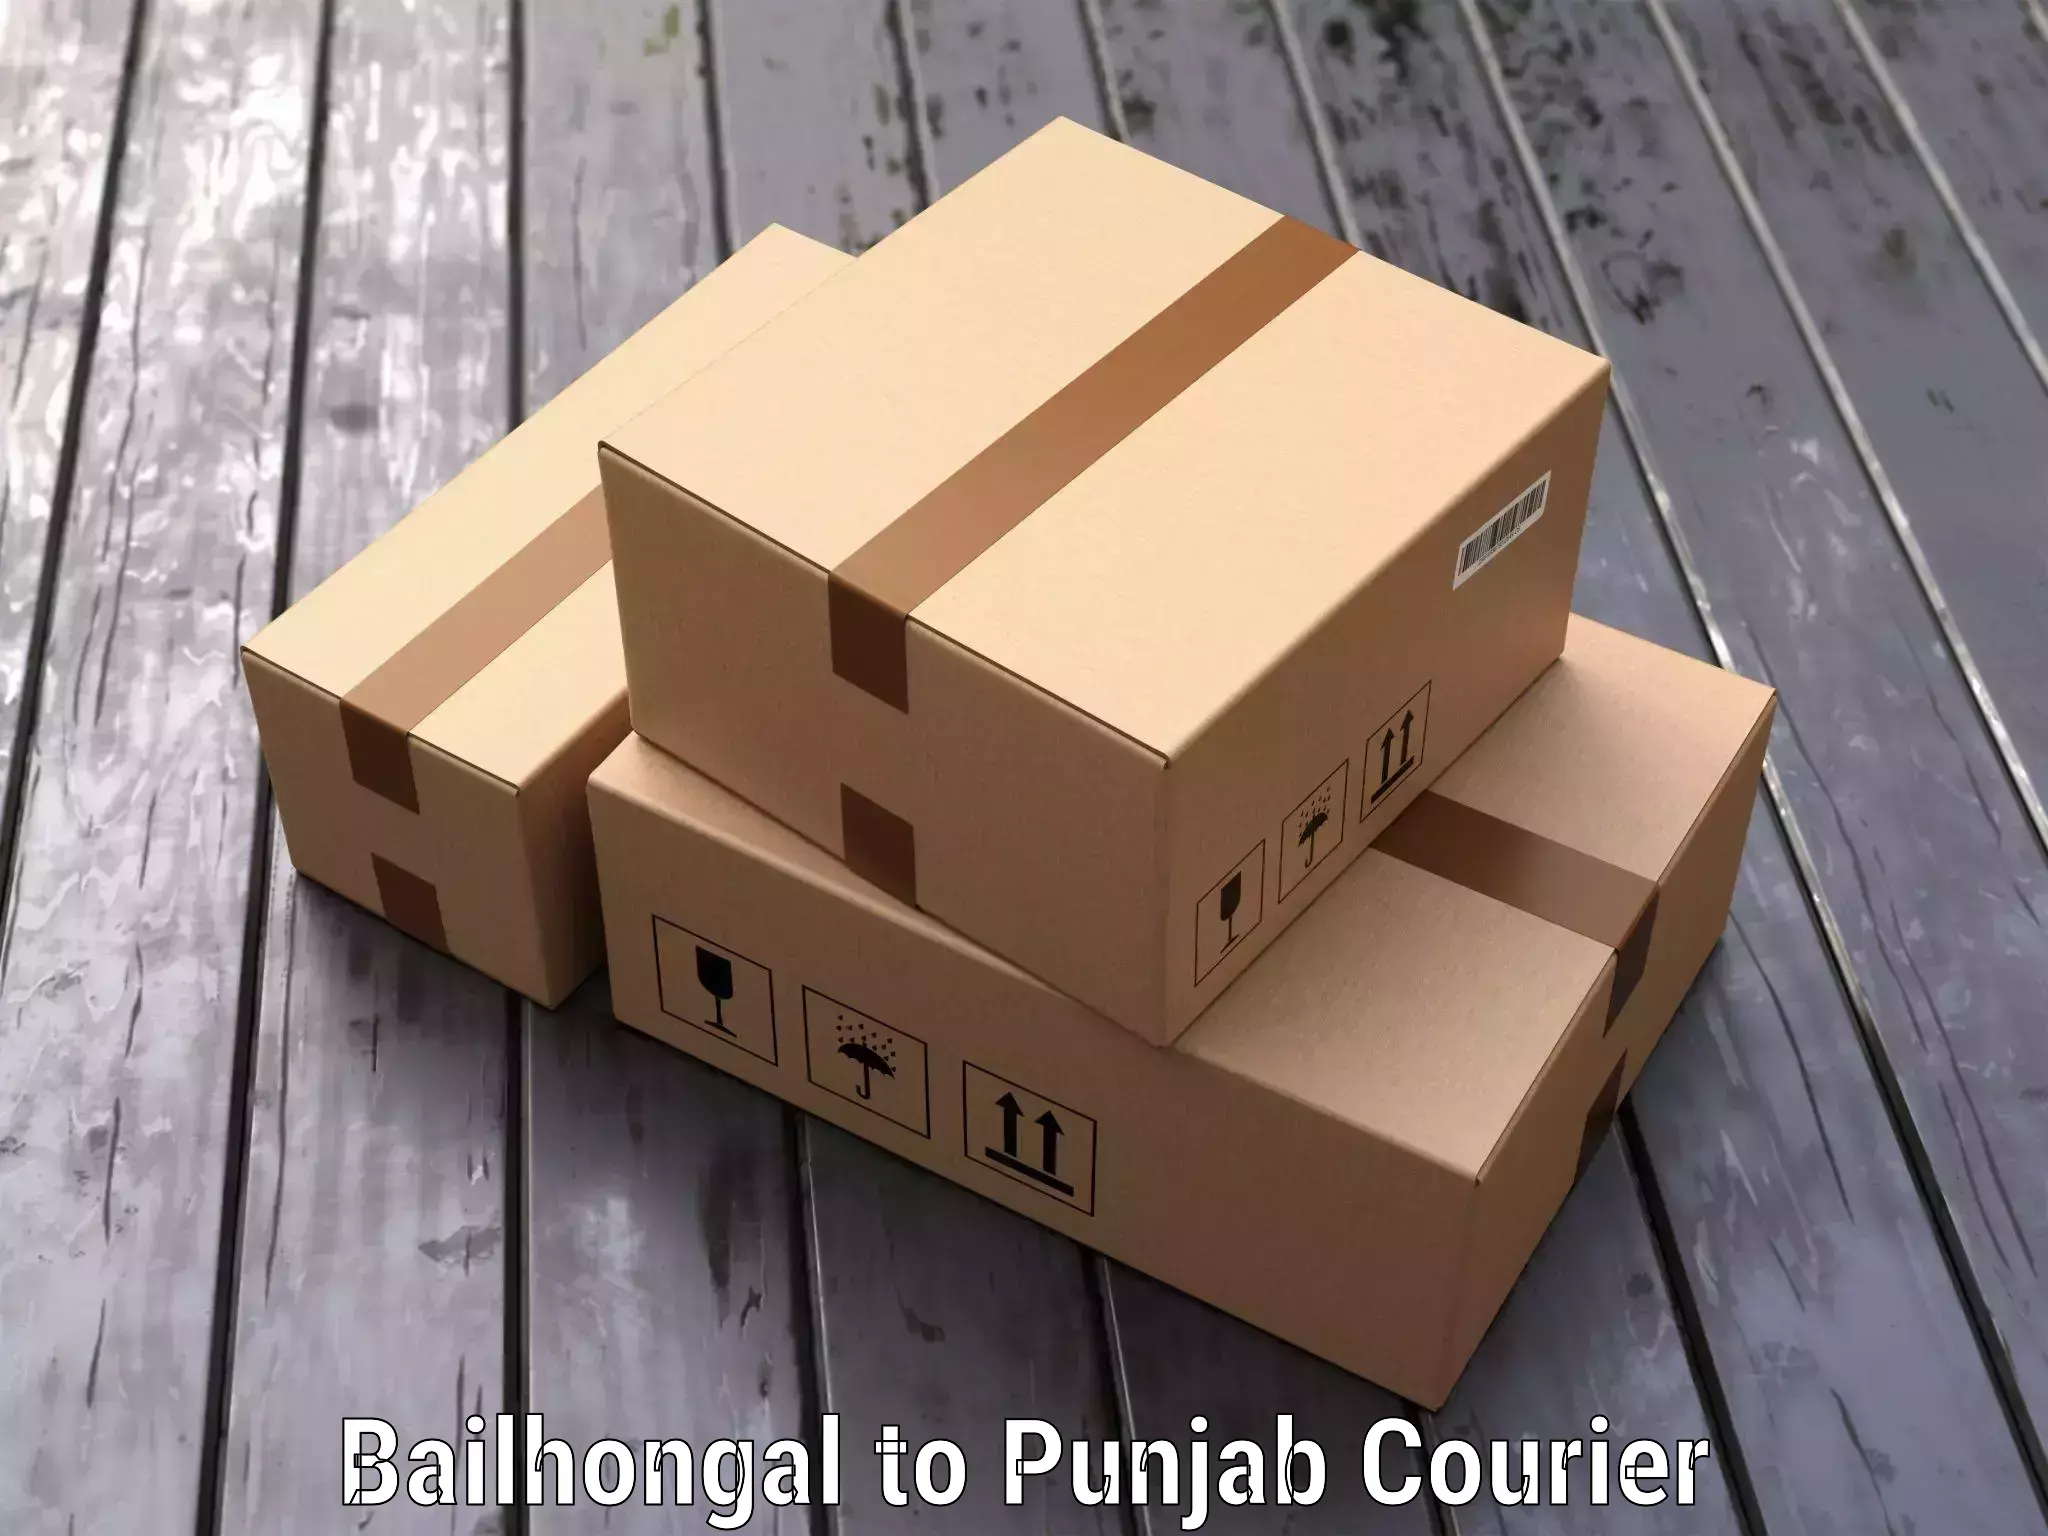 Luggage forwarding service Bailhongal to Punjab